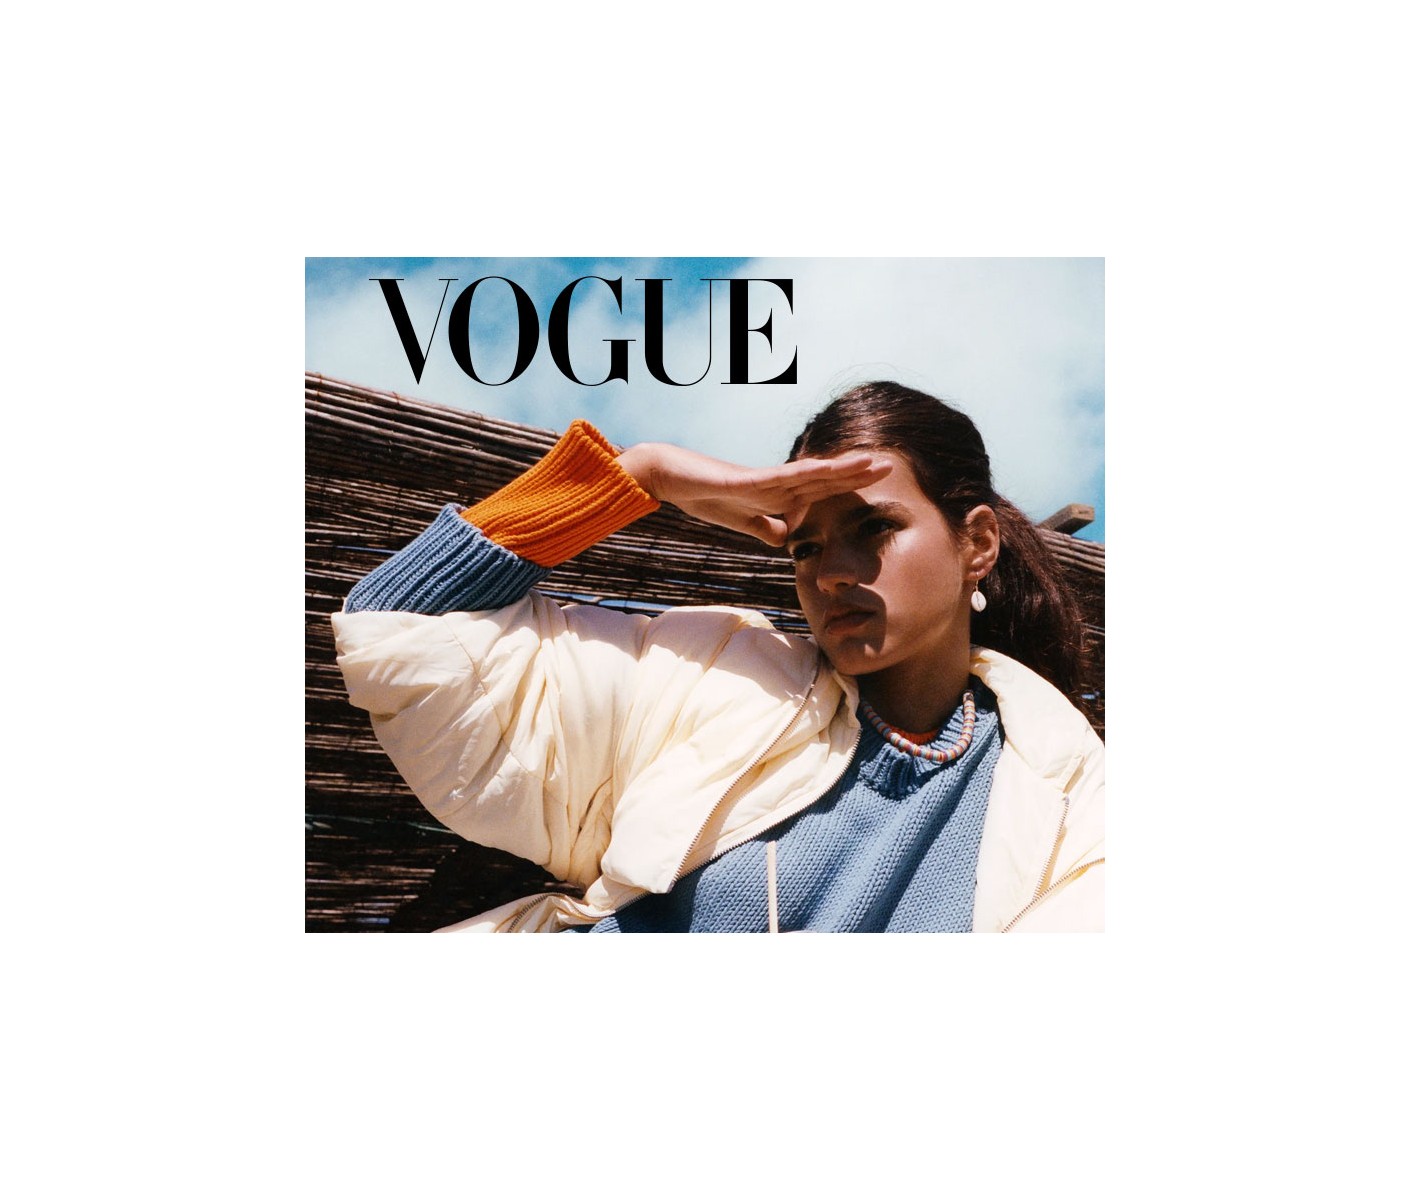 Vogue incluye a Muuhlloa entre las 7 marcas de cosmética gallega más destacadas